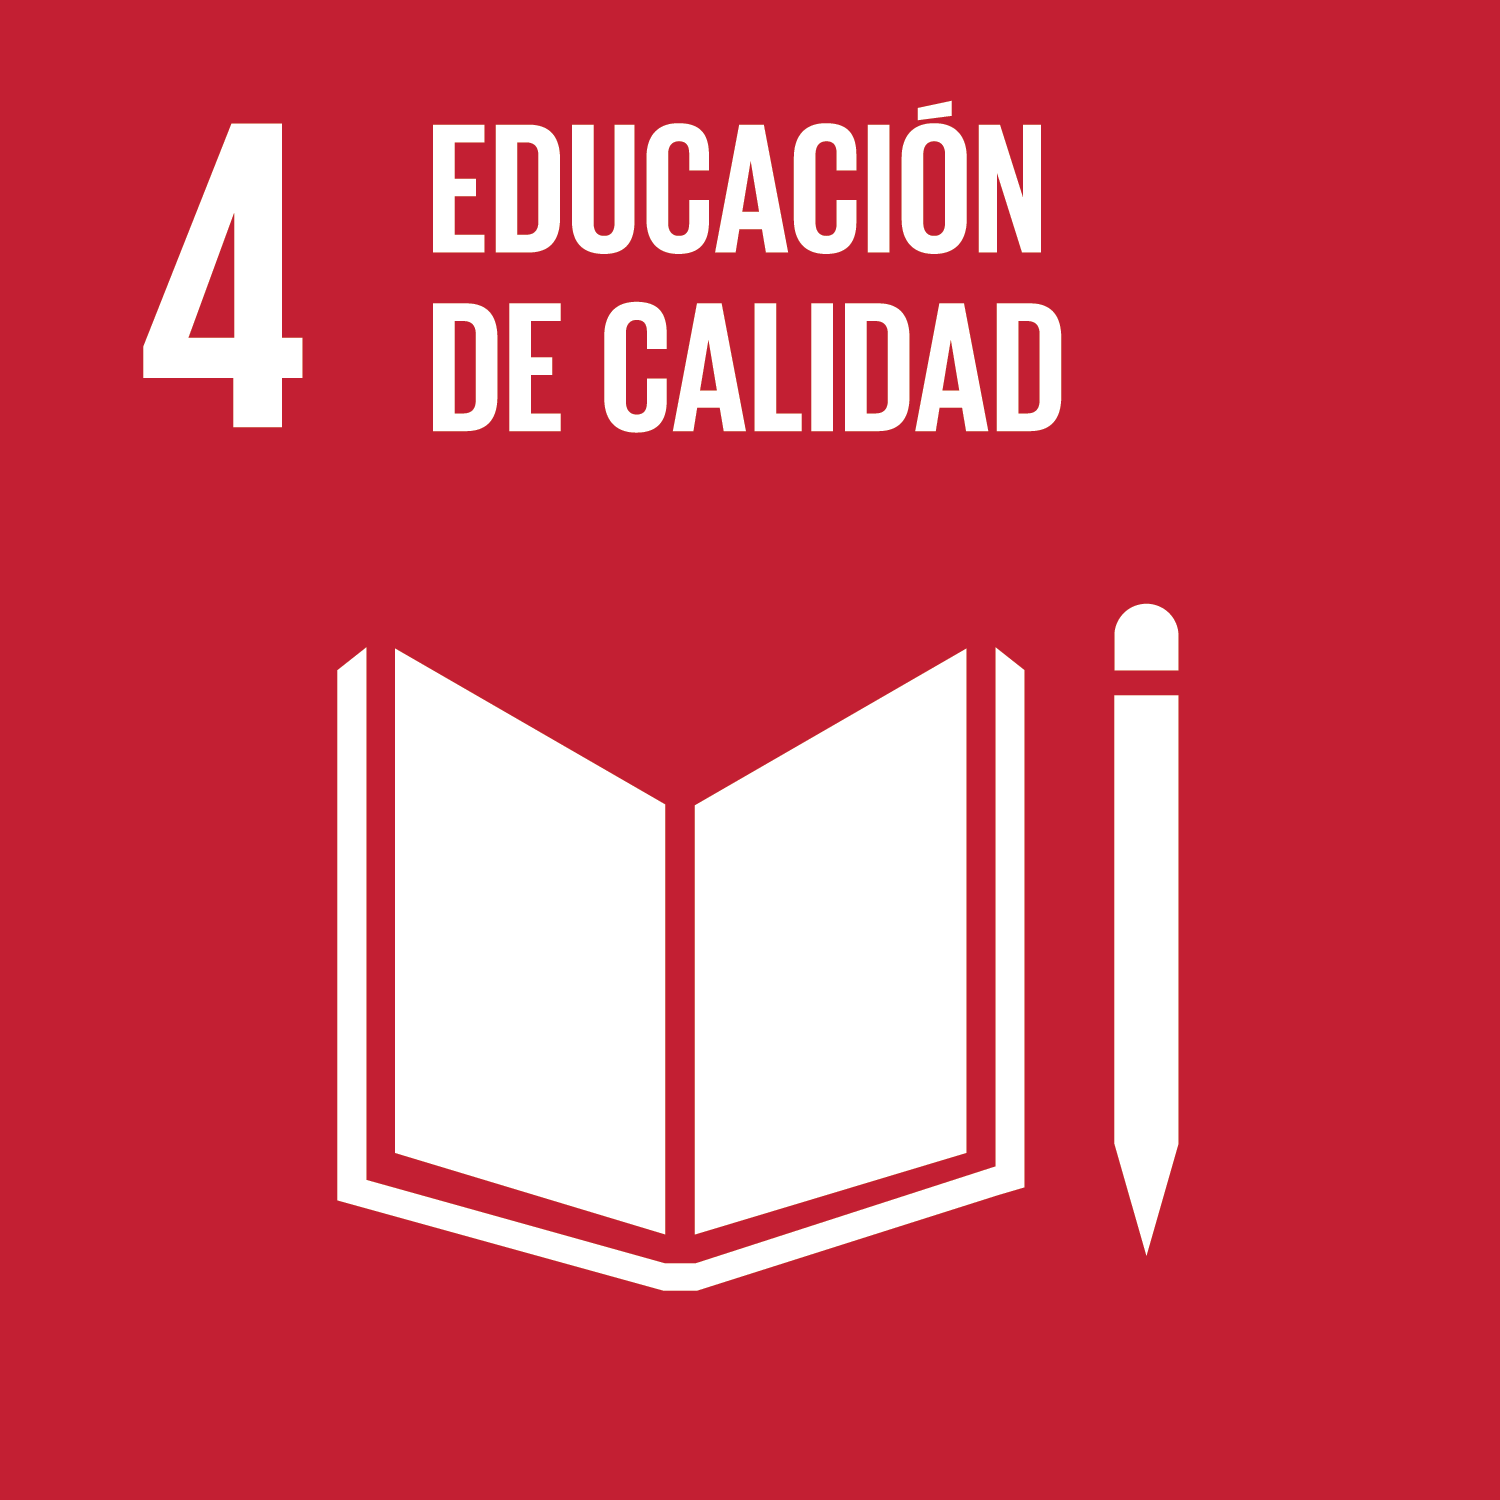 Garantizar una educación inclusiva, equitativa y de calidad y promover oportunidades de aprendizaje durante toda la vida para todos